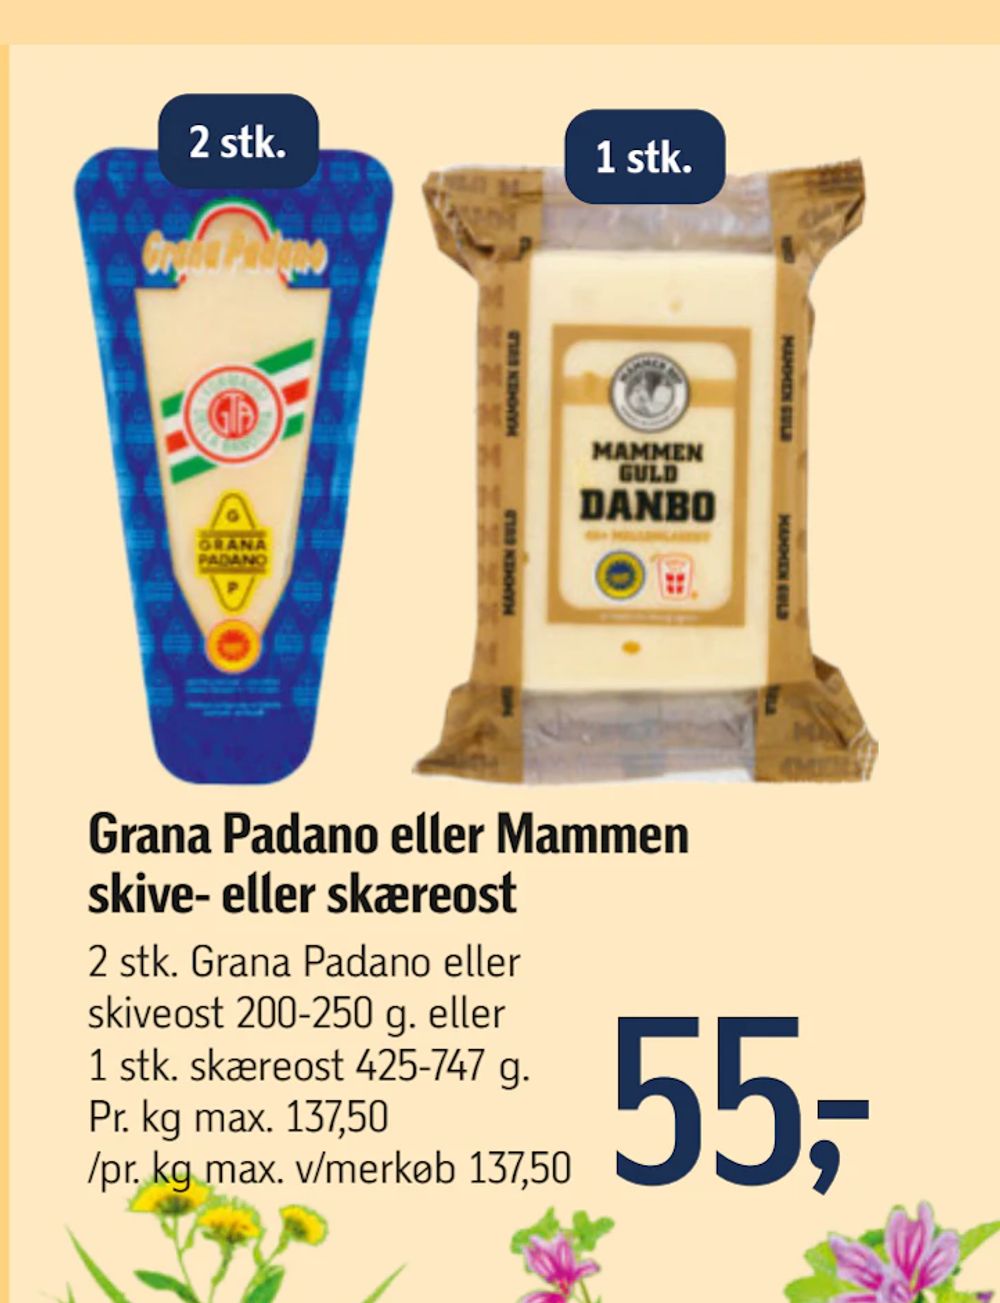 Tilbud på Grana Padano eller Mammen skive- eller skæreost fra føtex til 55 kr.